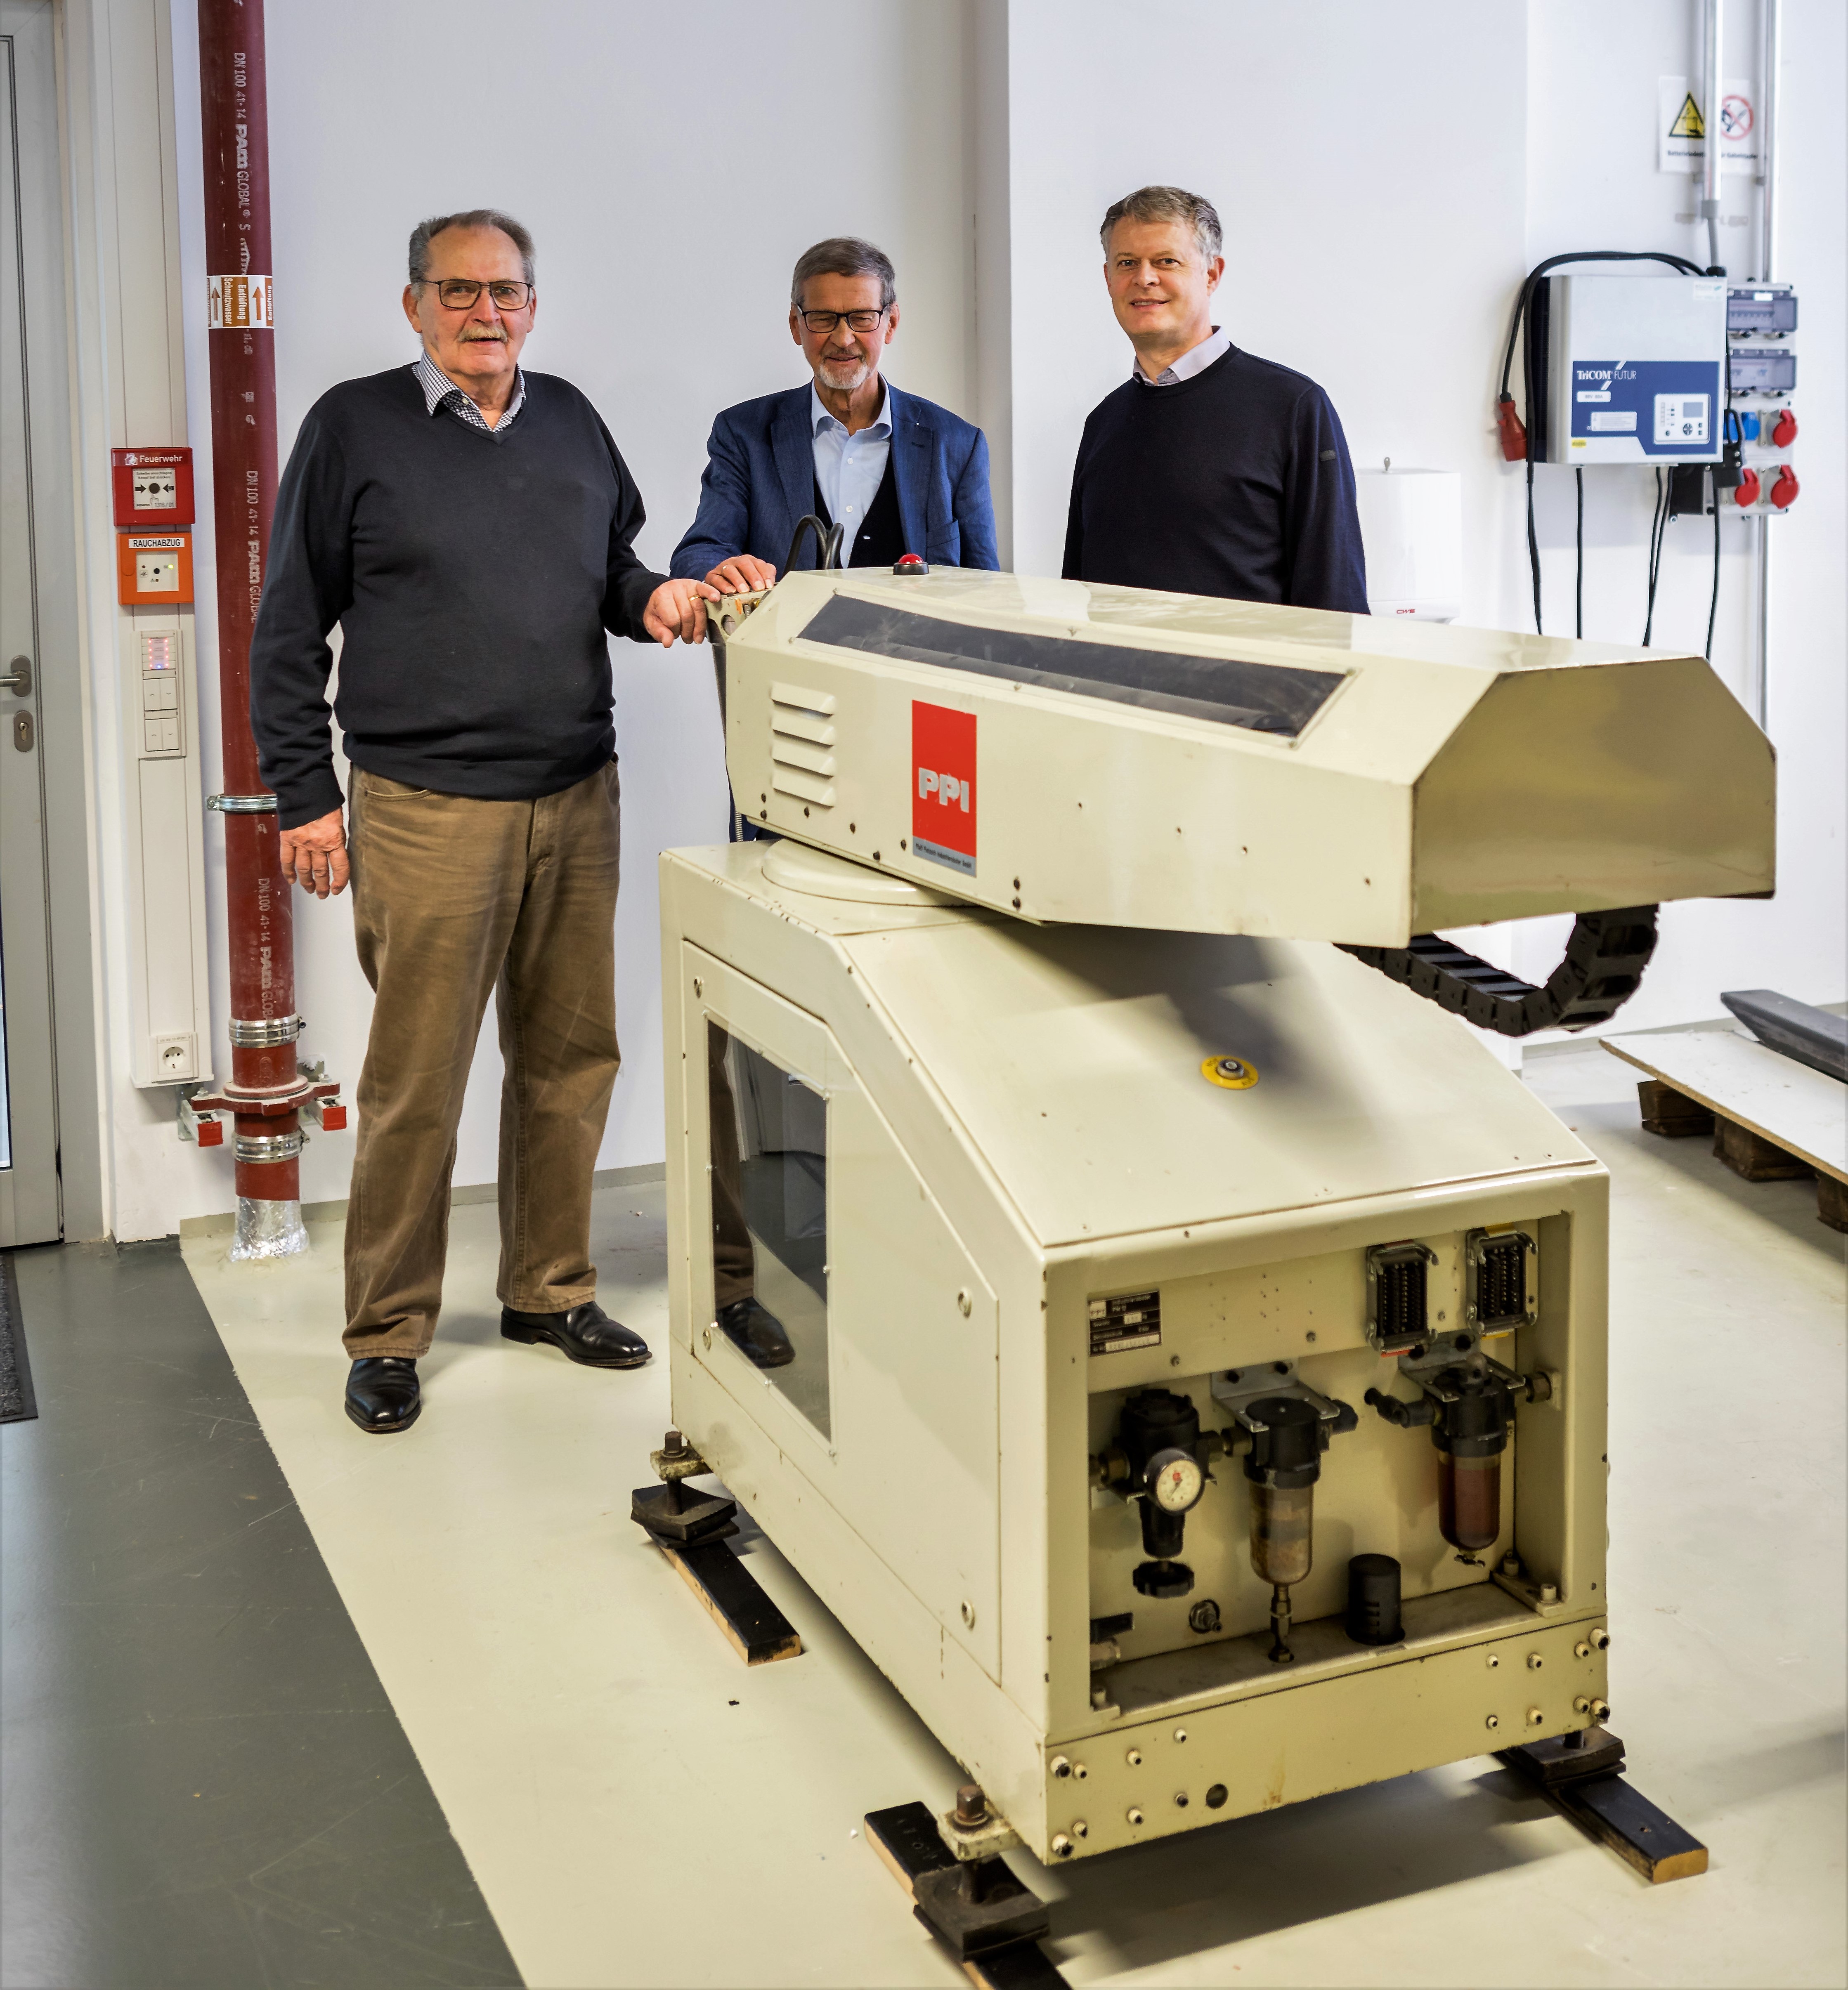 Rolf Dieter Schraft, Alfred Neugebauer und Martin Hägele mit dem Handhabungsroboter PPI PM 12